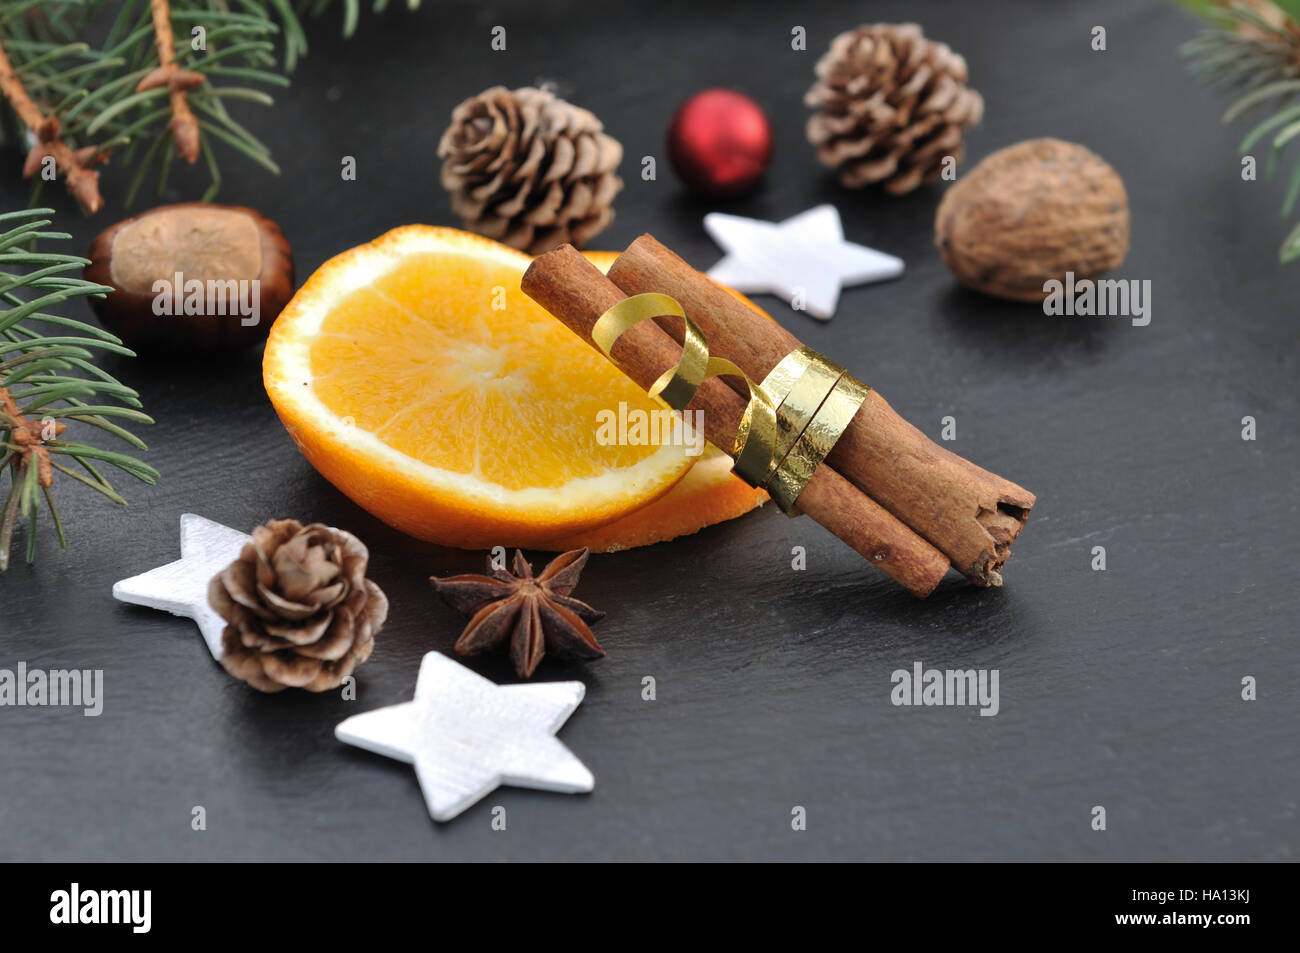 La cannelle, l'anis et les tranches d'orange parmi les décorations de Noël sur fond d'ardoise Banque D'Images